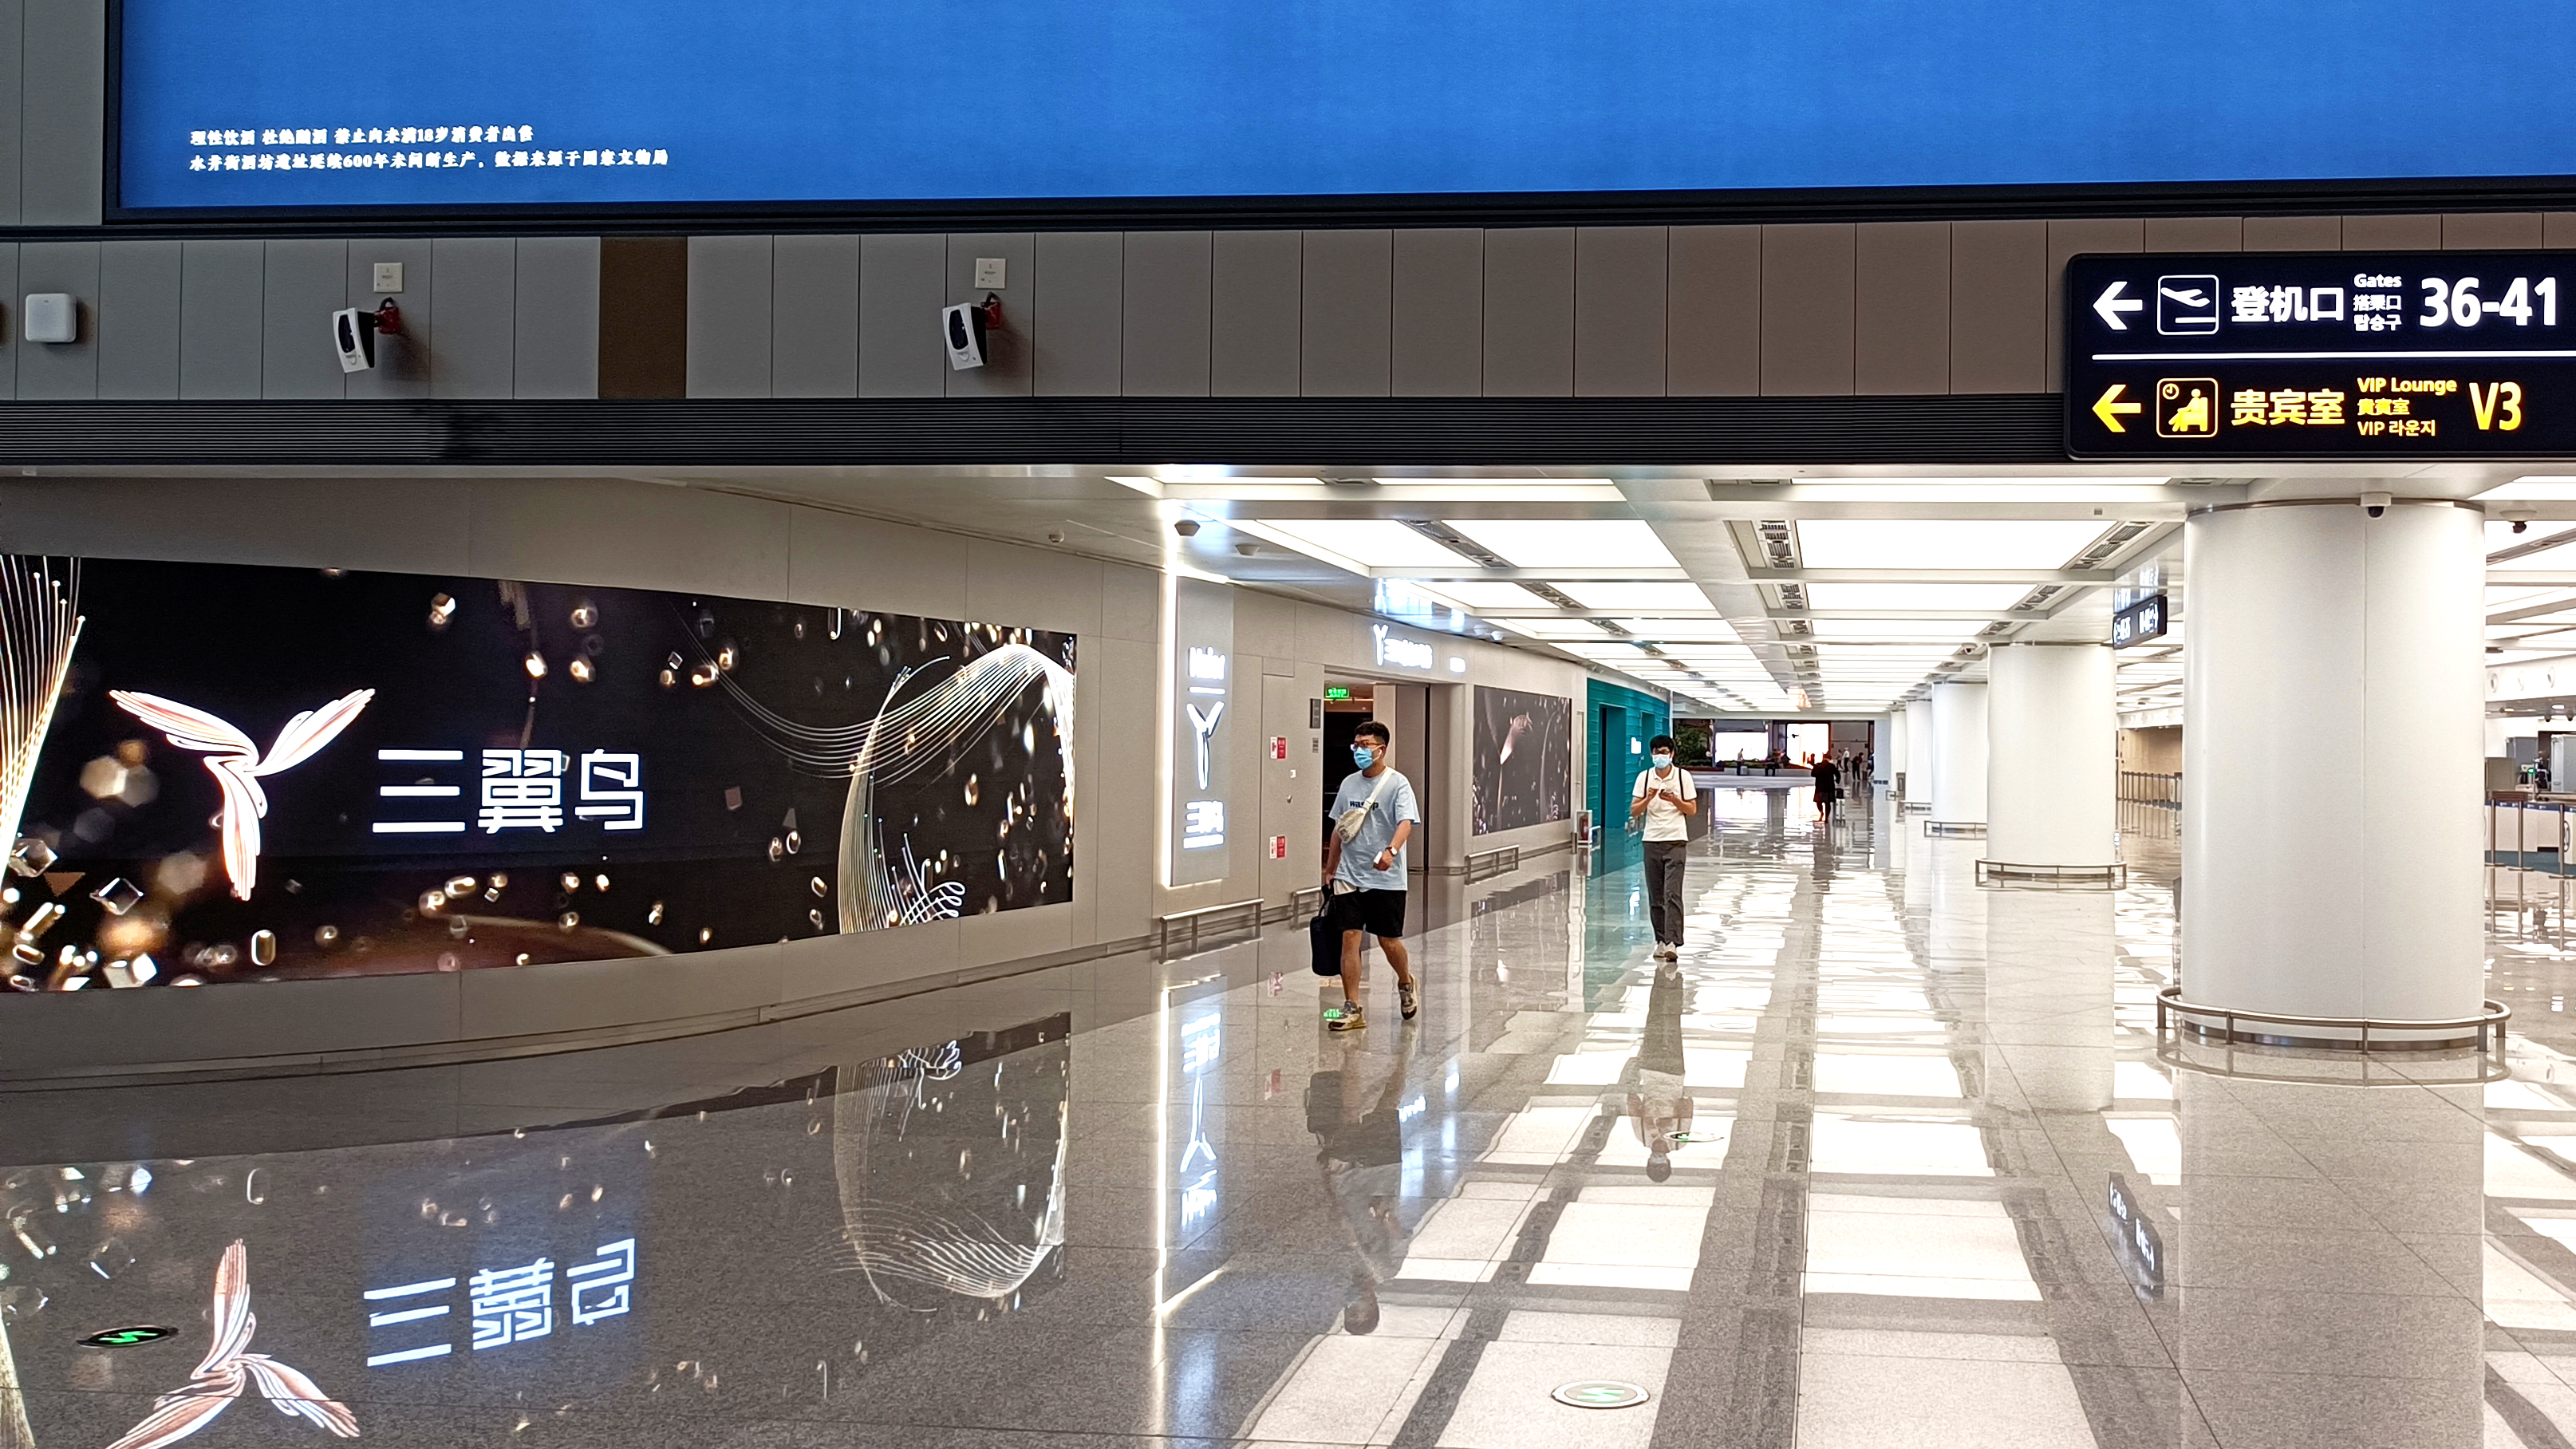 沃顿首创55寸LED标准面板惊艳亮相青岛新机场